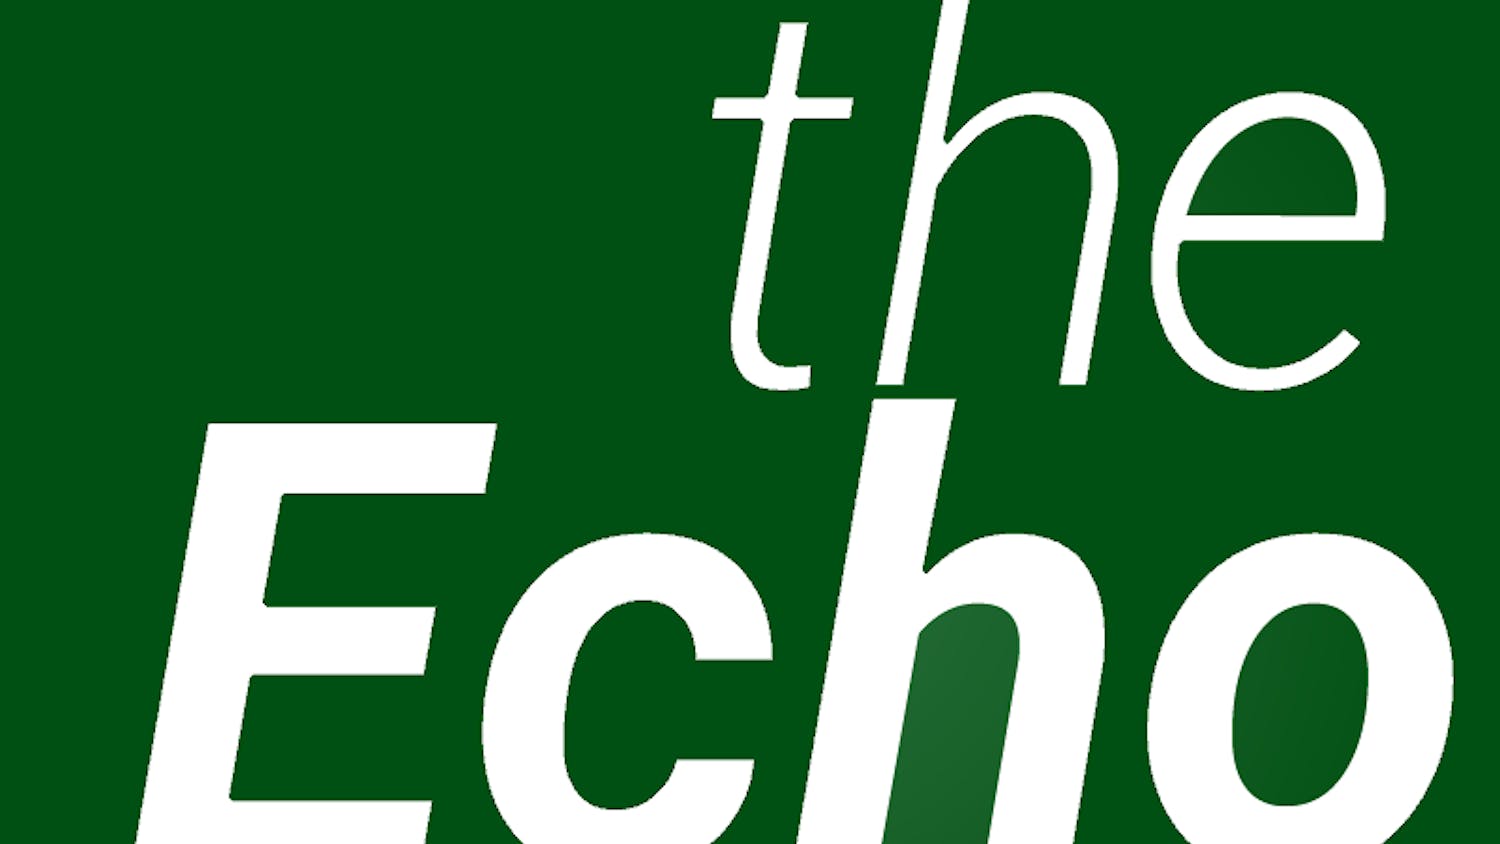 Echo Logo